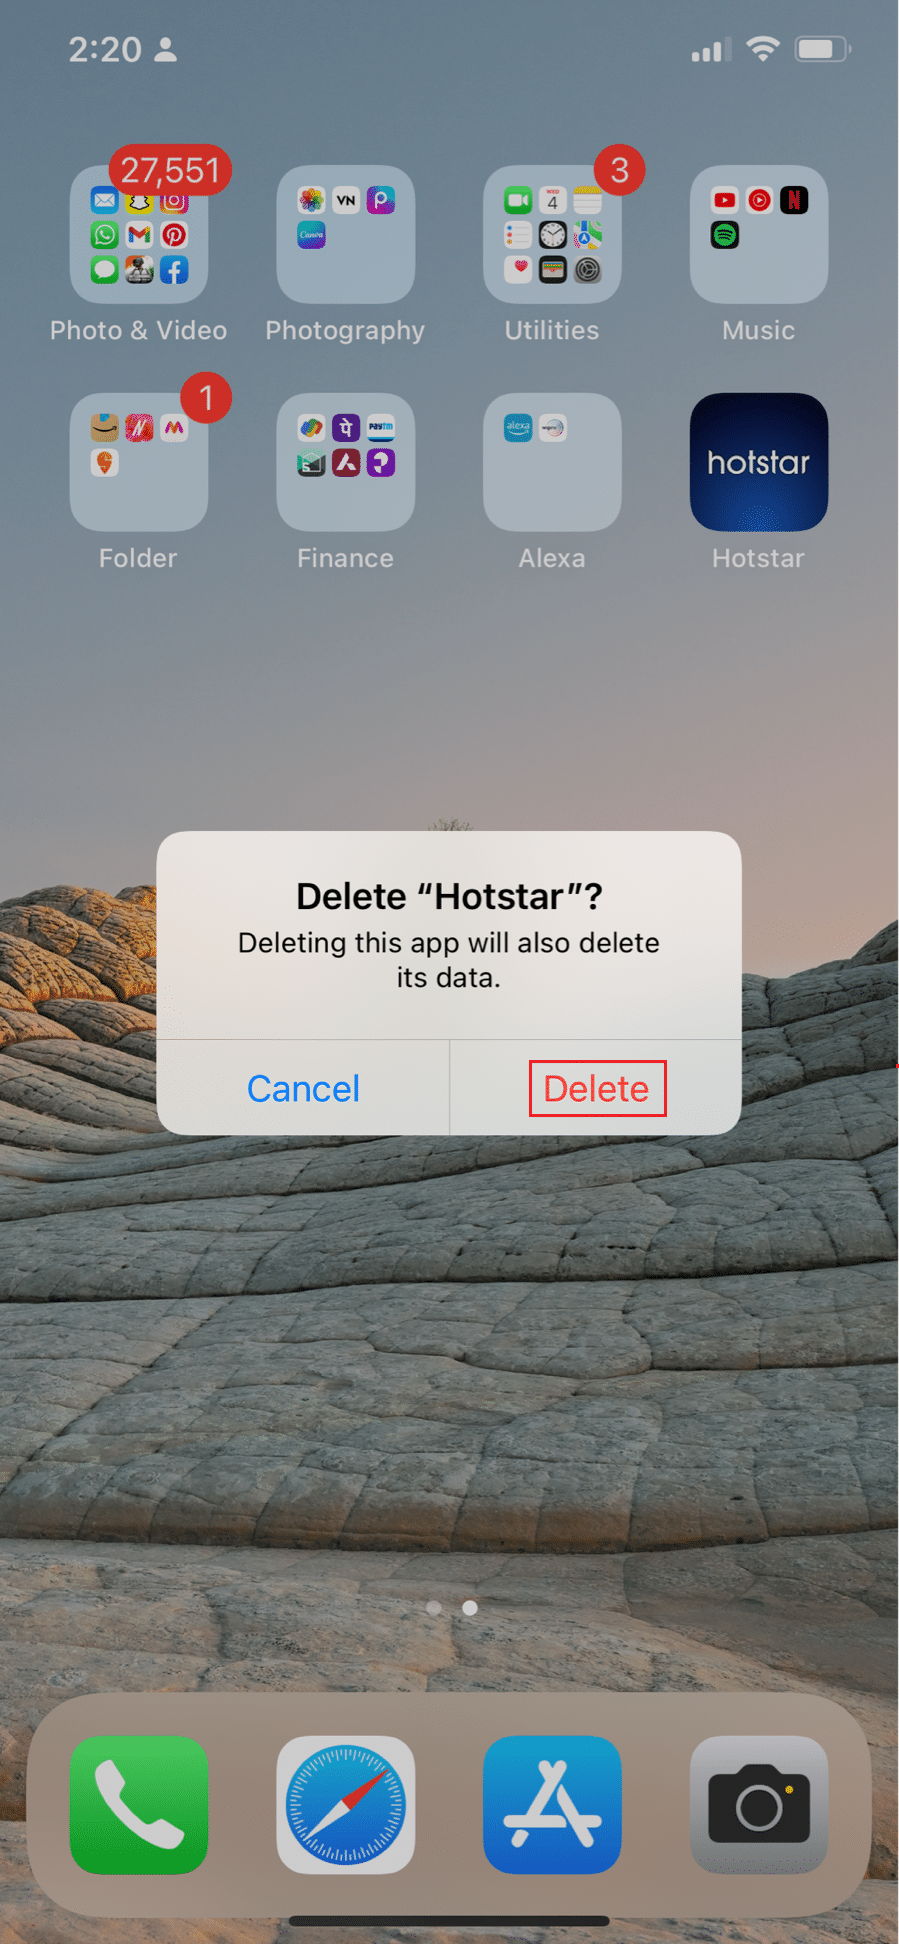 выберите опцию удаления, чтобы удалить приложение Hotstar на iPhone